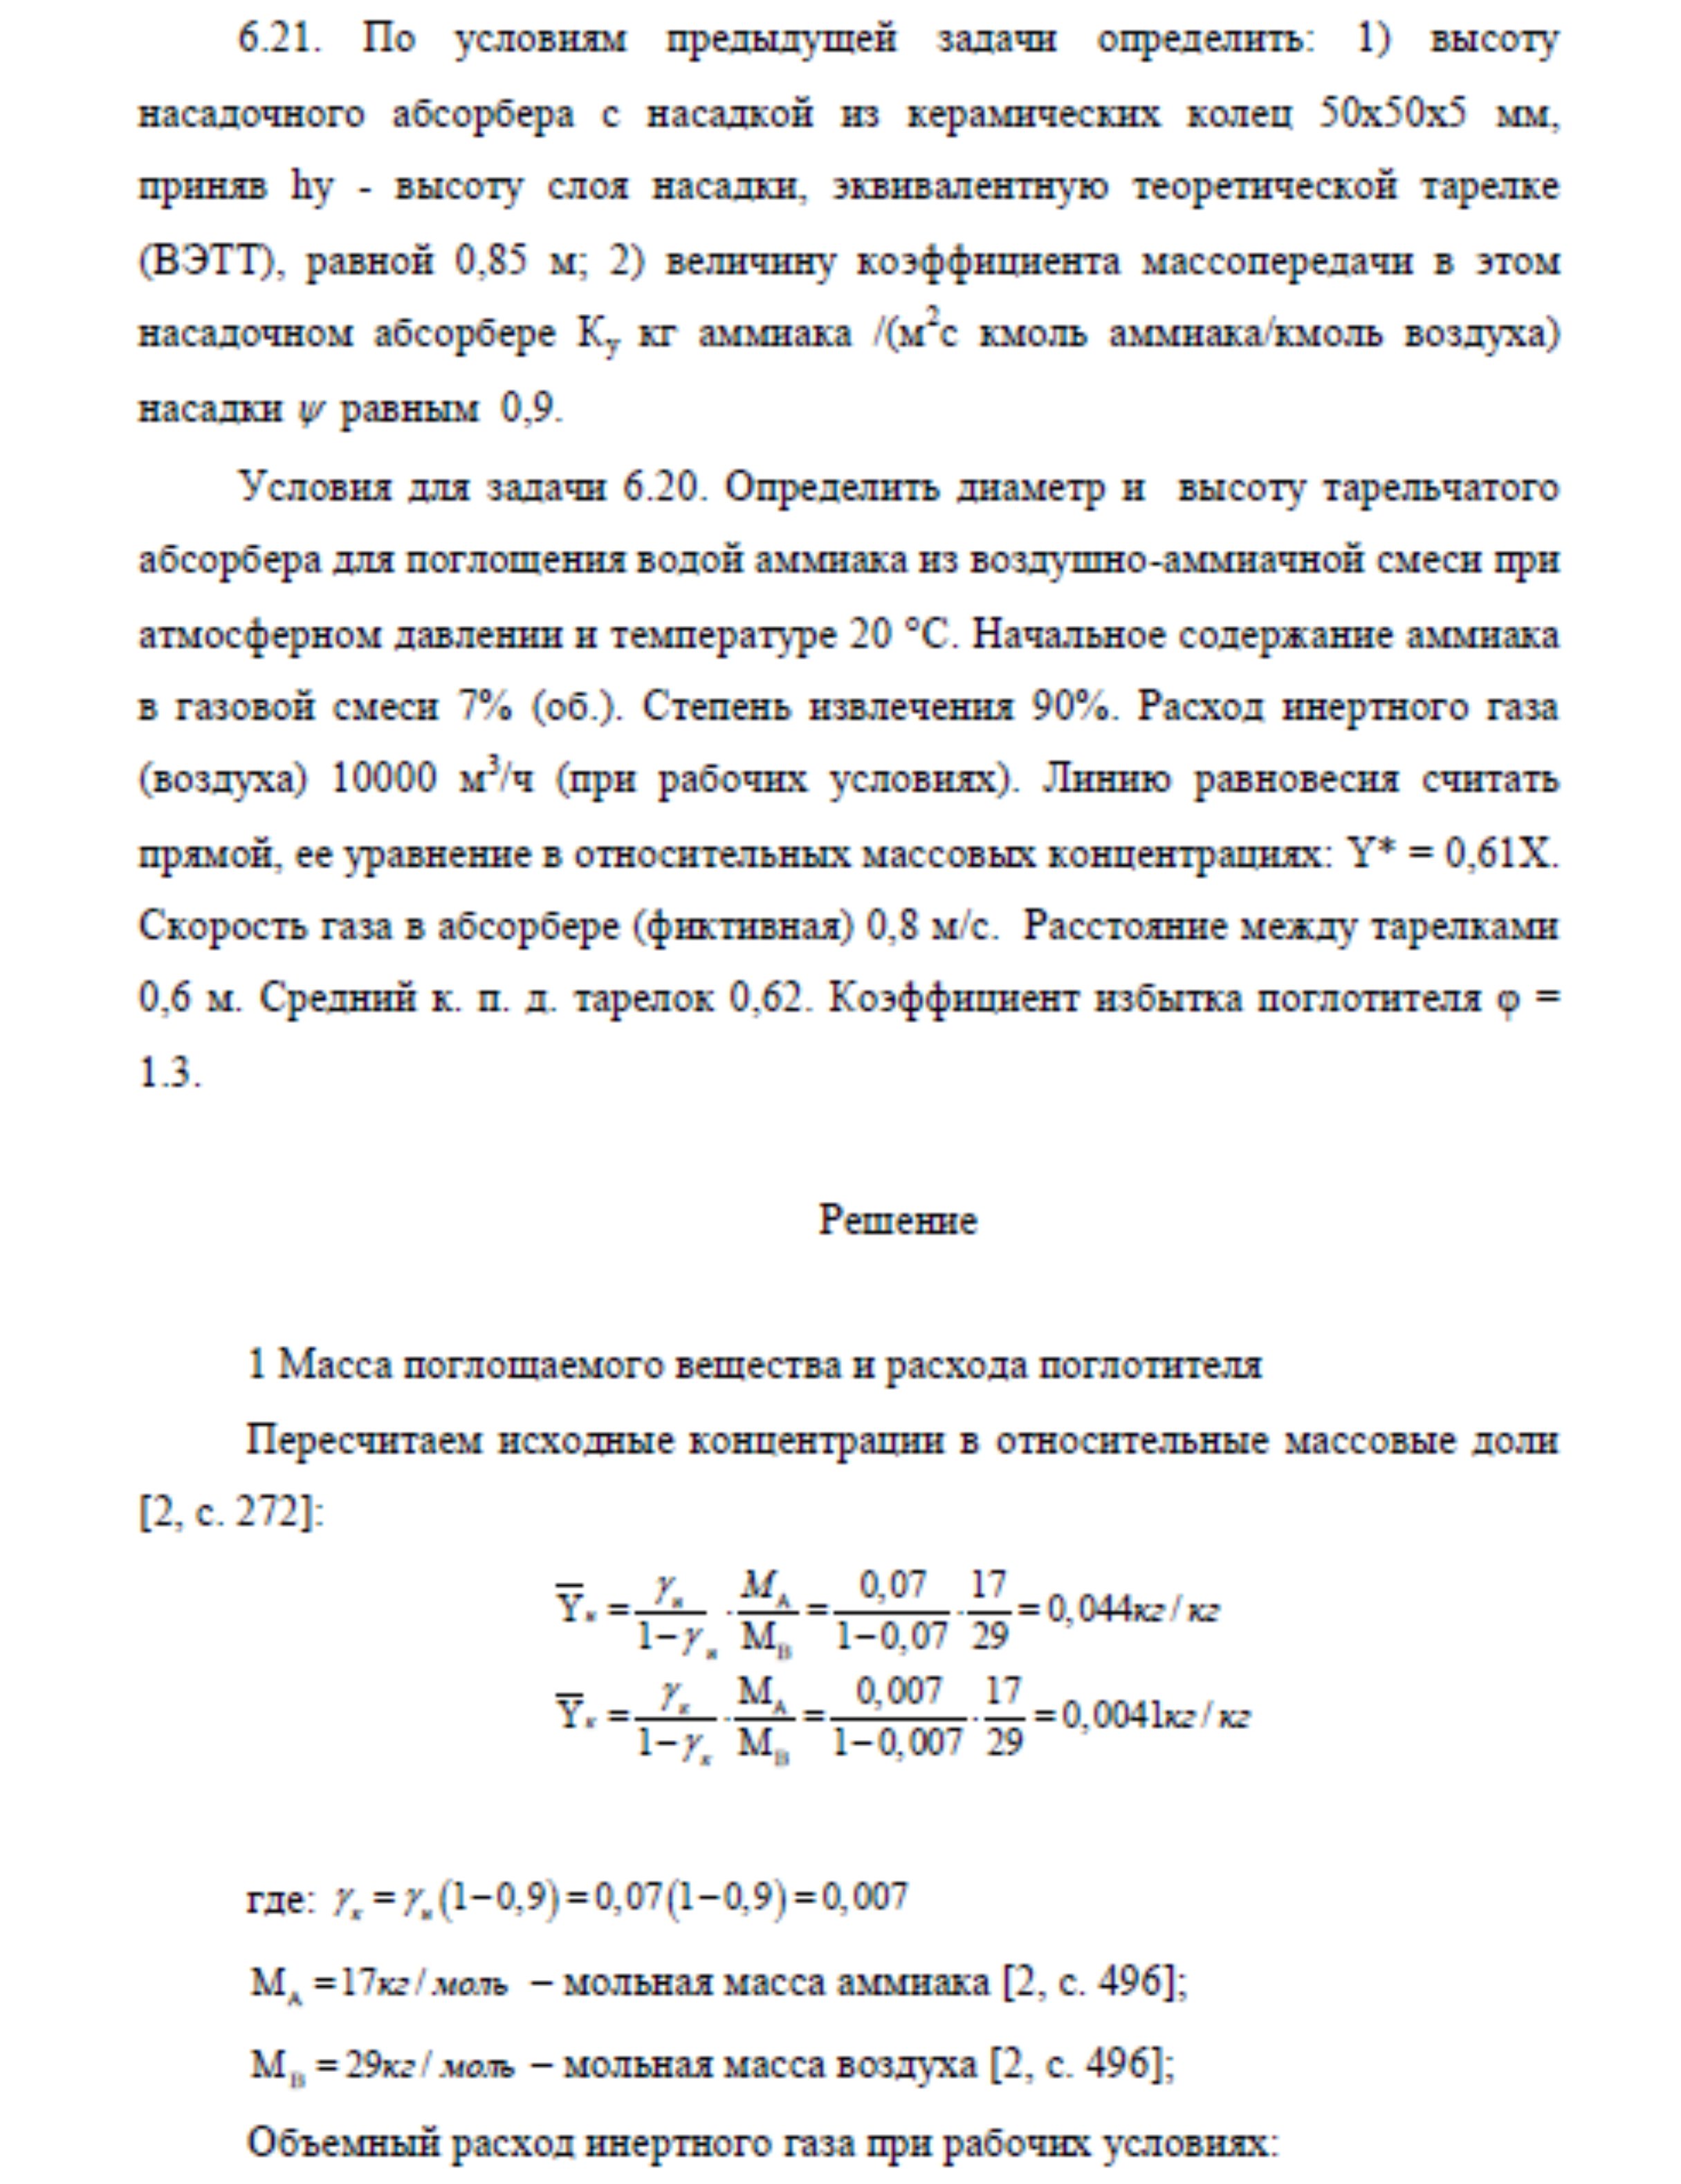 Решение задачи 6.21 по ПАХТ из задачника Павлова Романкова Носкова